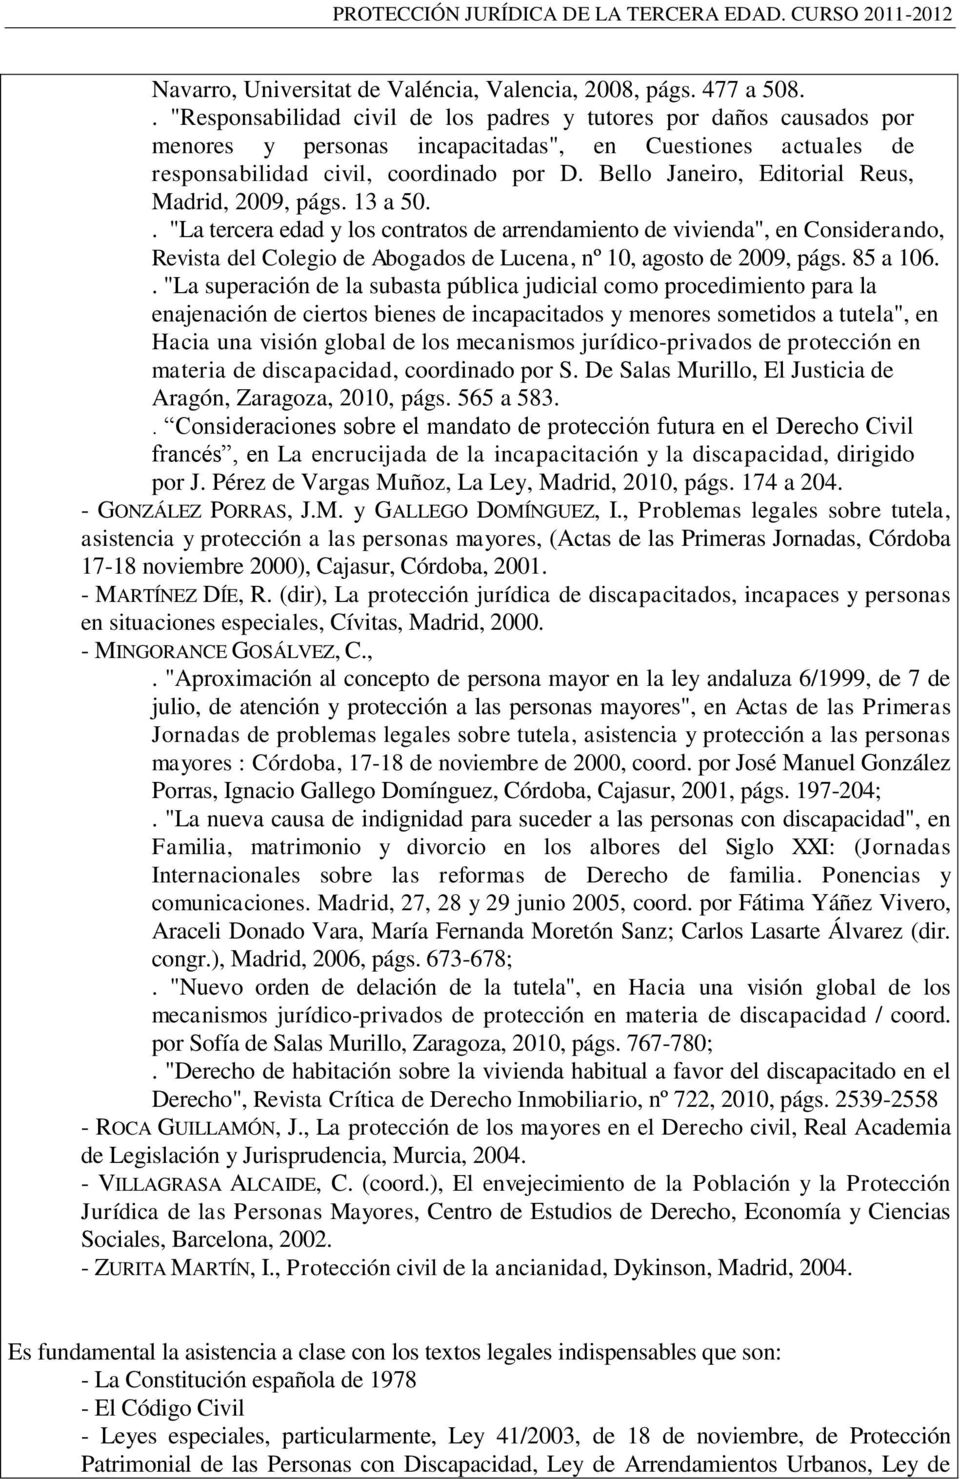 Bello Janeiro, Editorial Reus, Madrid, 2009, págs. 13 a 50.